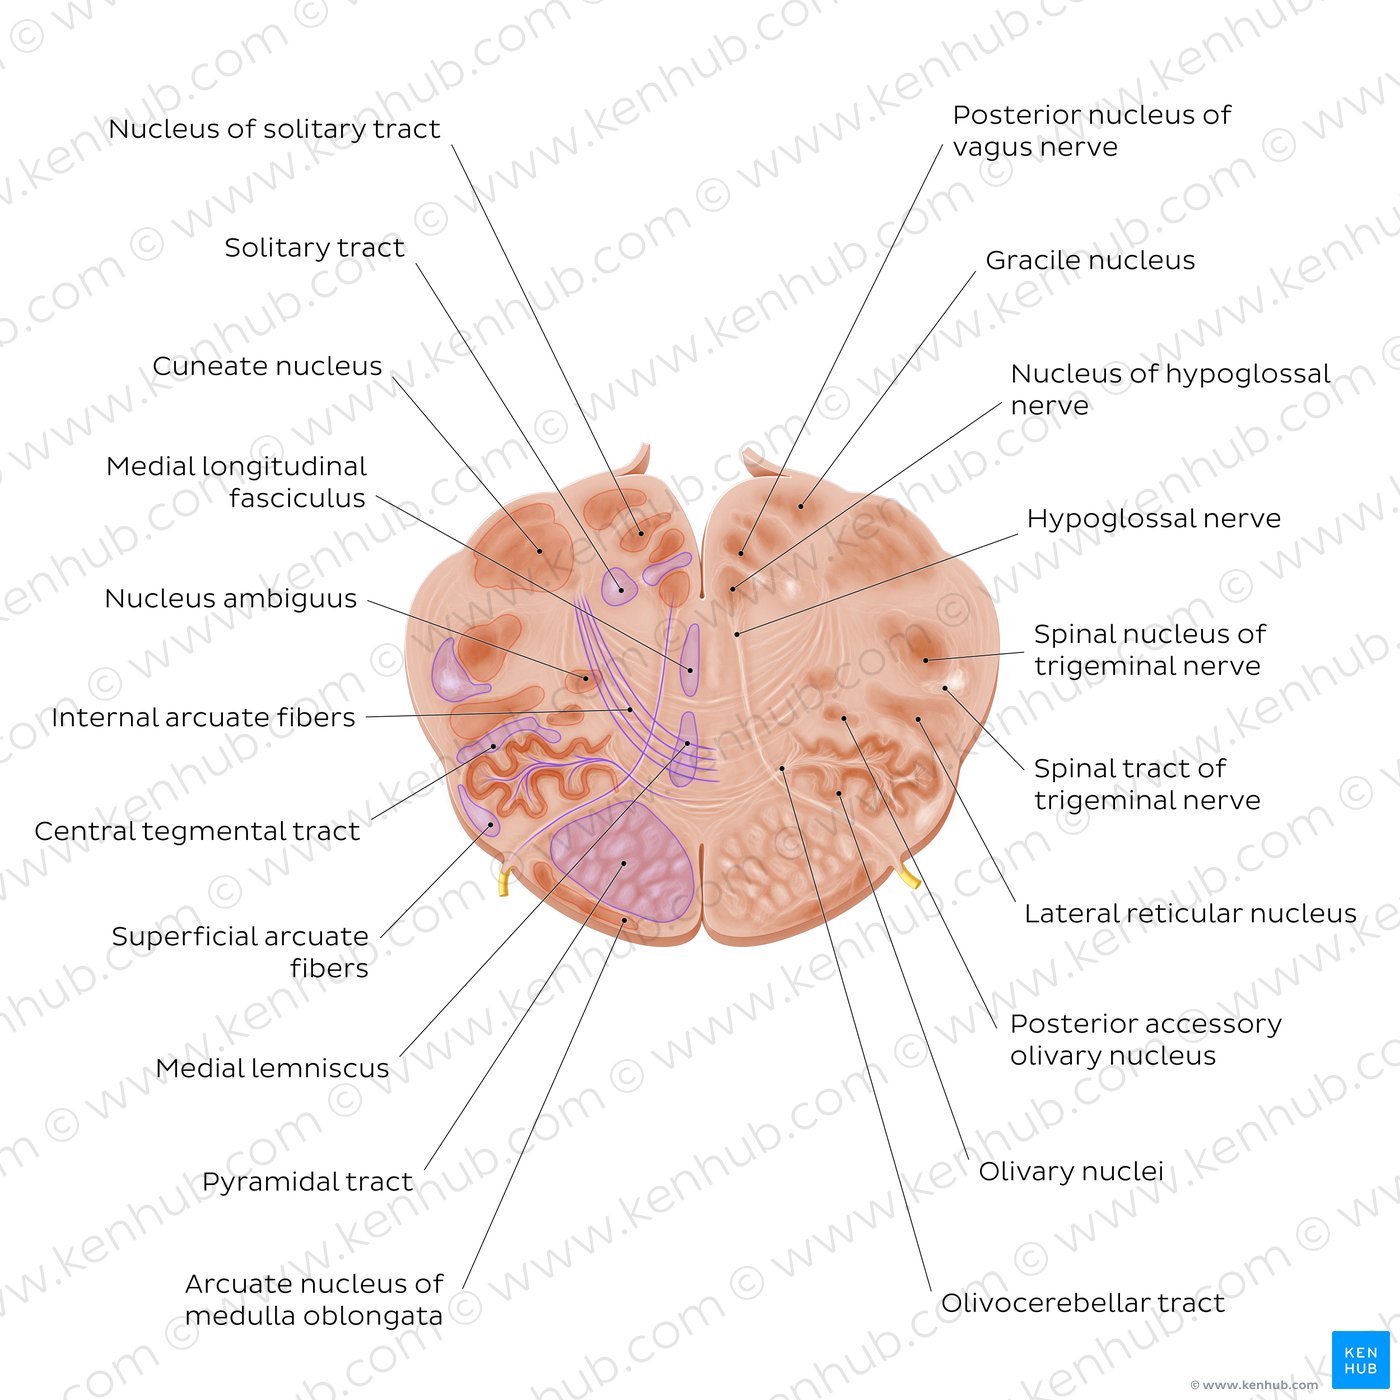 Cross section of the medulla oblongata: Hypoglossal nerve level